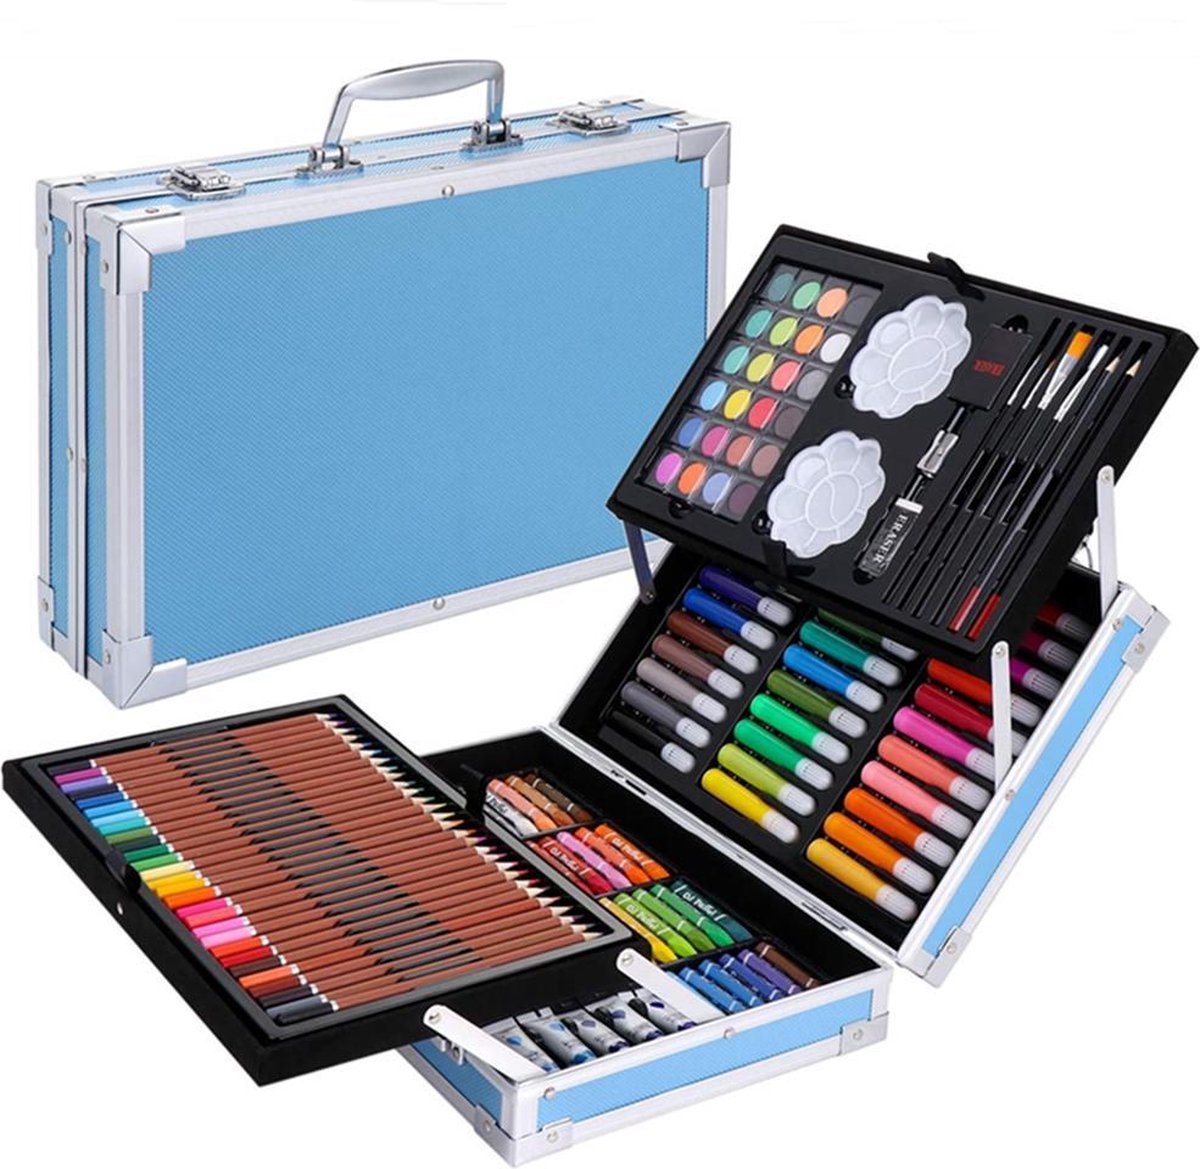 Kit de Dessin 123 Pièces, Malette Dessin Inclus Pastel, Aquarelle, Peinture  Acryliques, Marqueur, Métallique Crayons de Couleur et Materiel Dessin